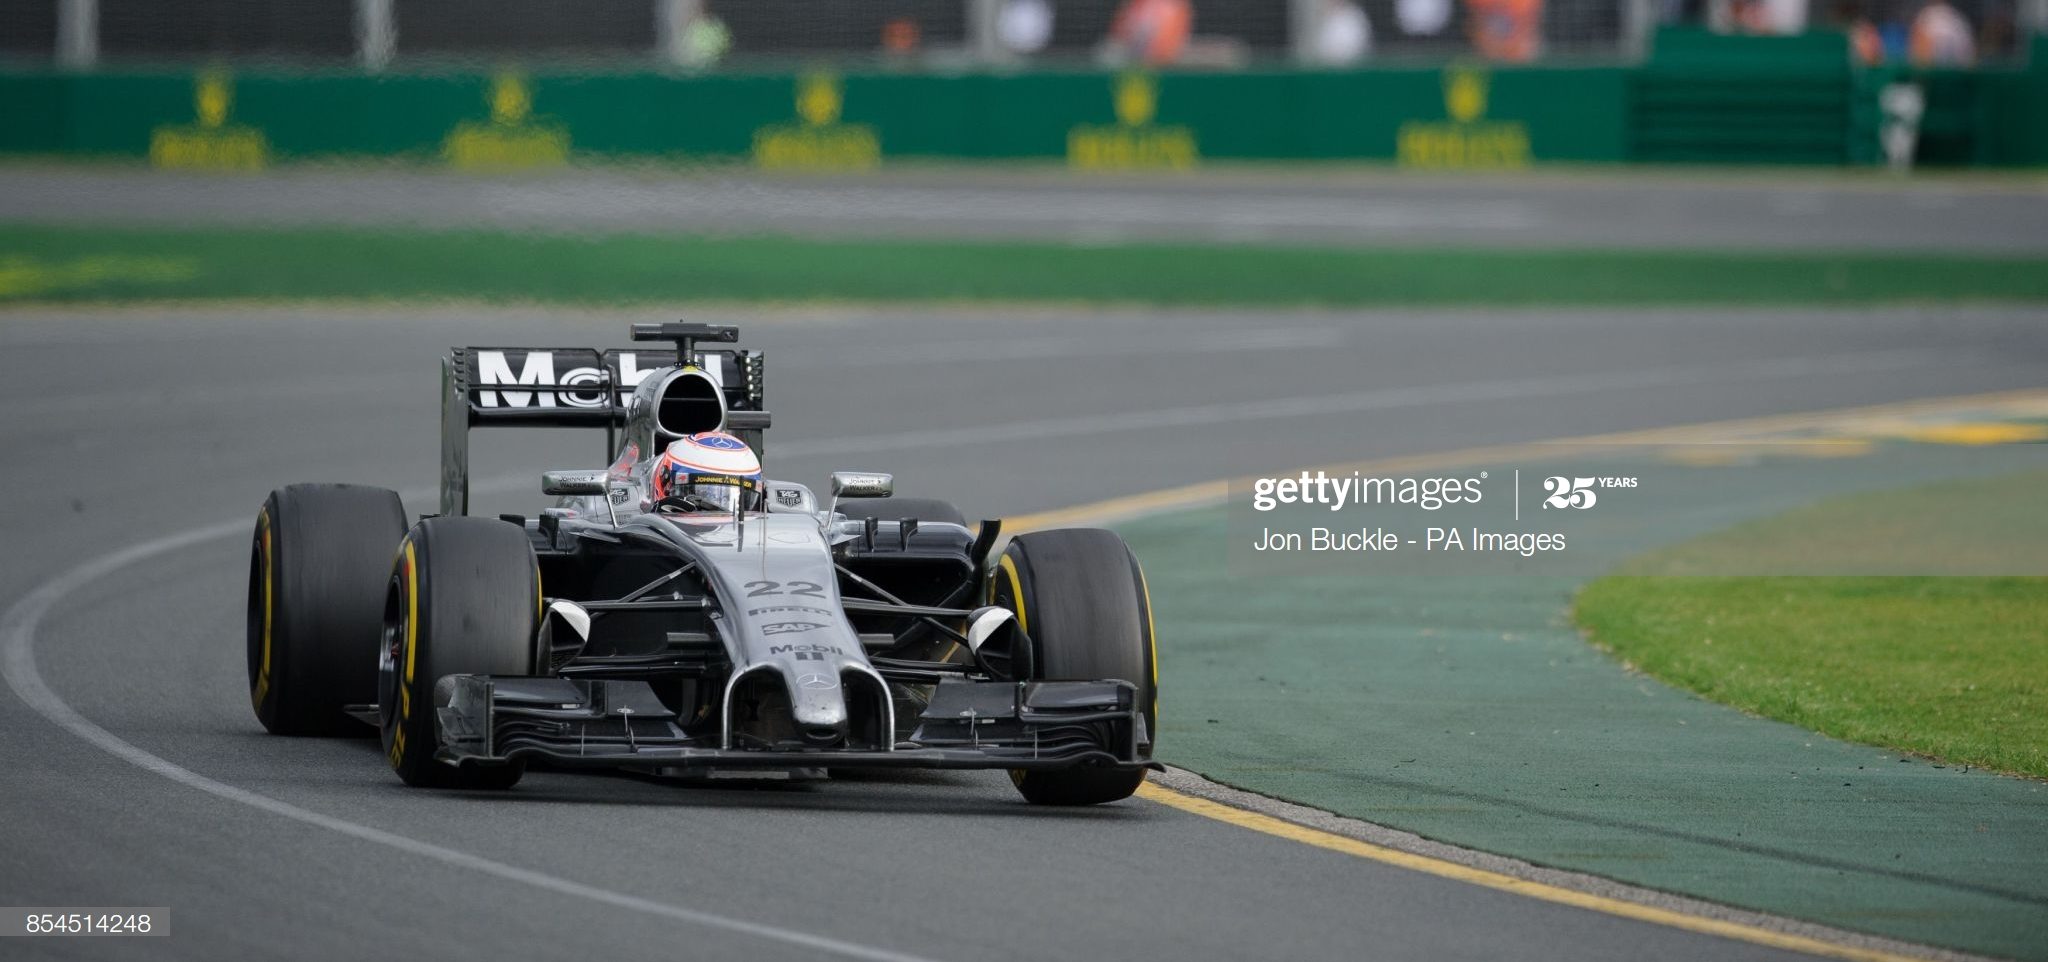 McLaren Mercedes 2014